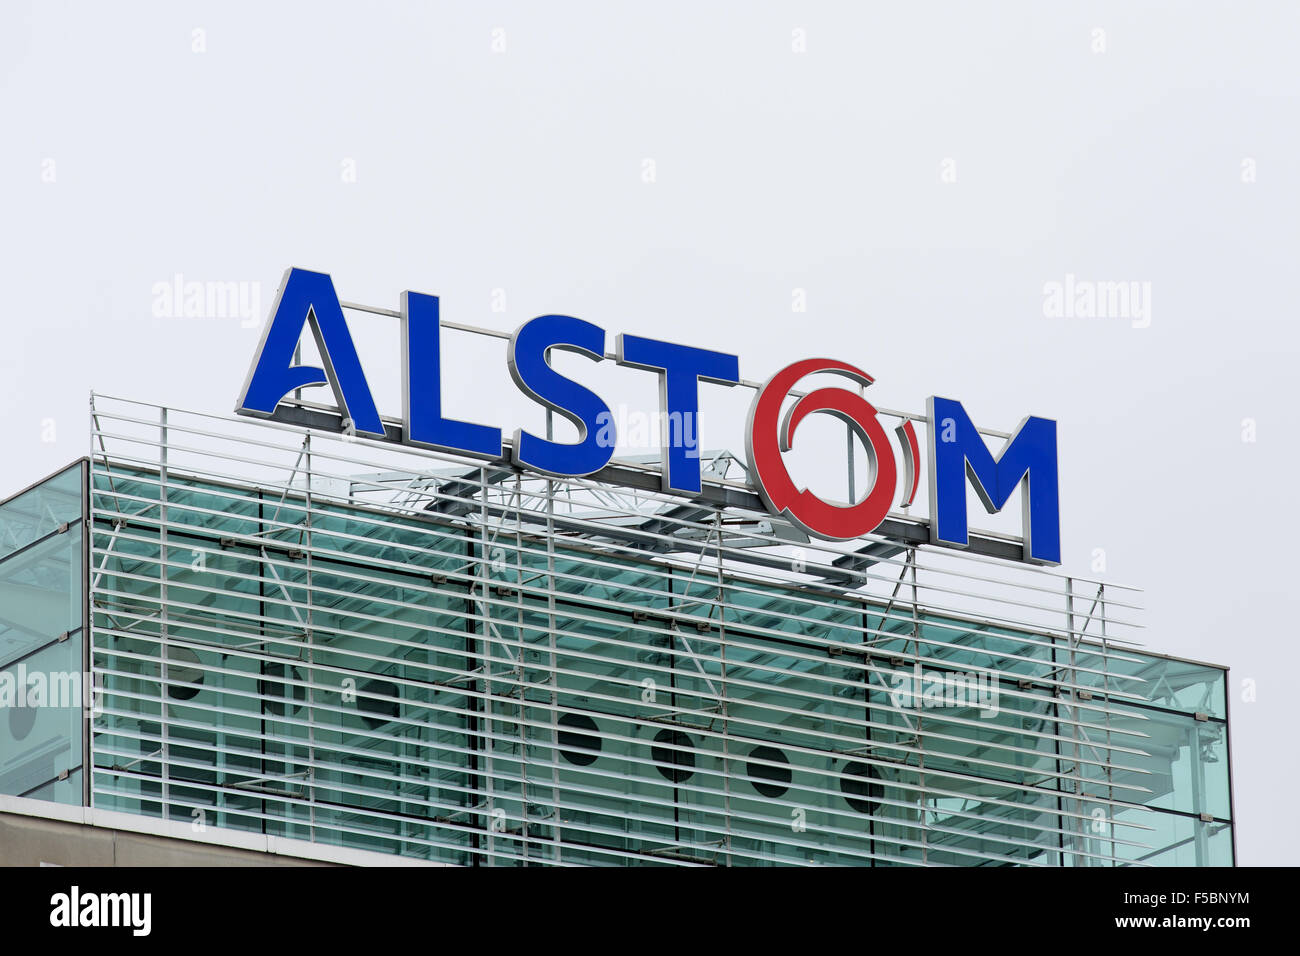 Baden, Suisse. 31 octobre 2015. Derniers jours de l'logo Alstom sur le toit du quartier général de l'énergie thermique avant de fusion et d'acquisition de General Electric le 2 novembre 2015. Carsten Reisiger/Alamy Live News. Banque D'Images